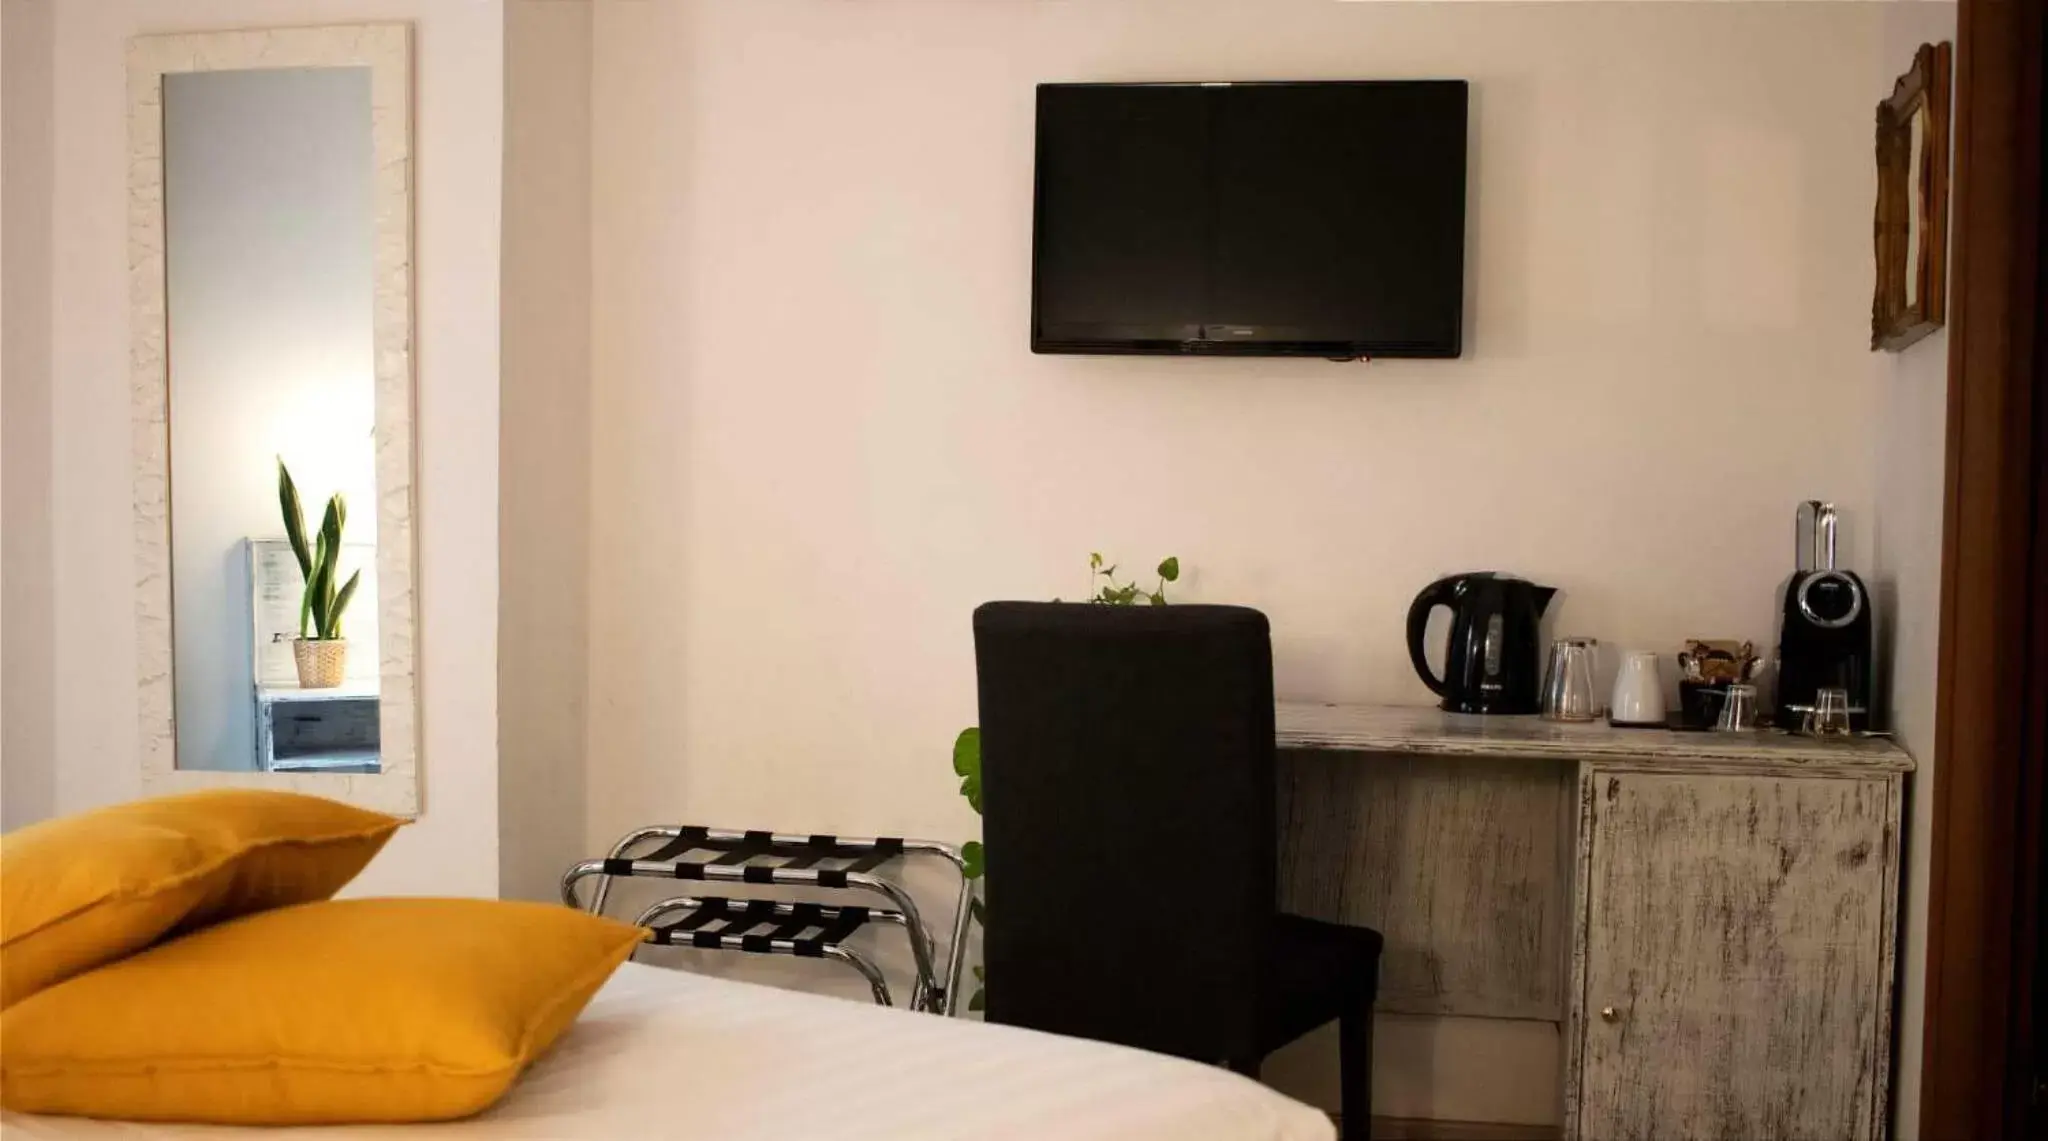 Bedroom, TV/Entertainment Center in In Trastevere House